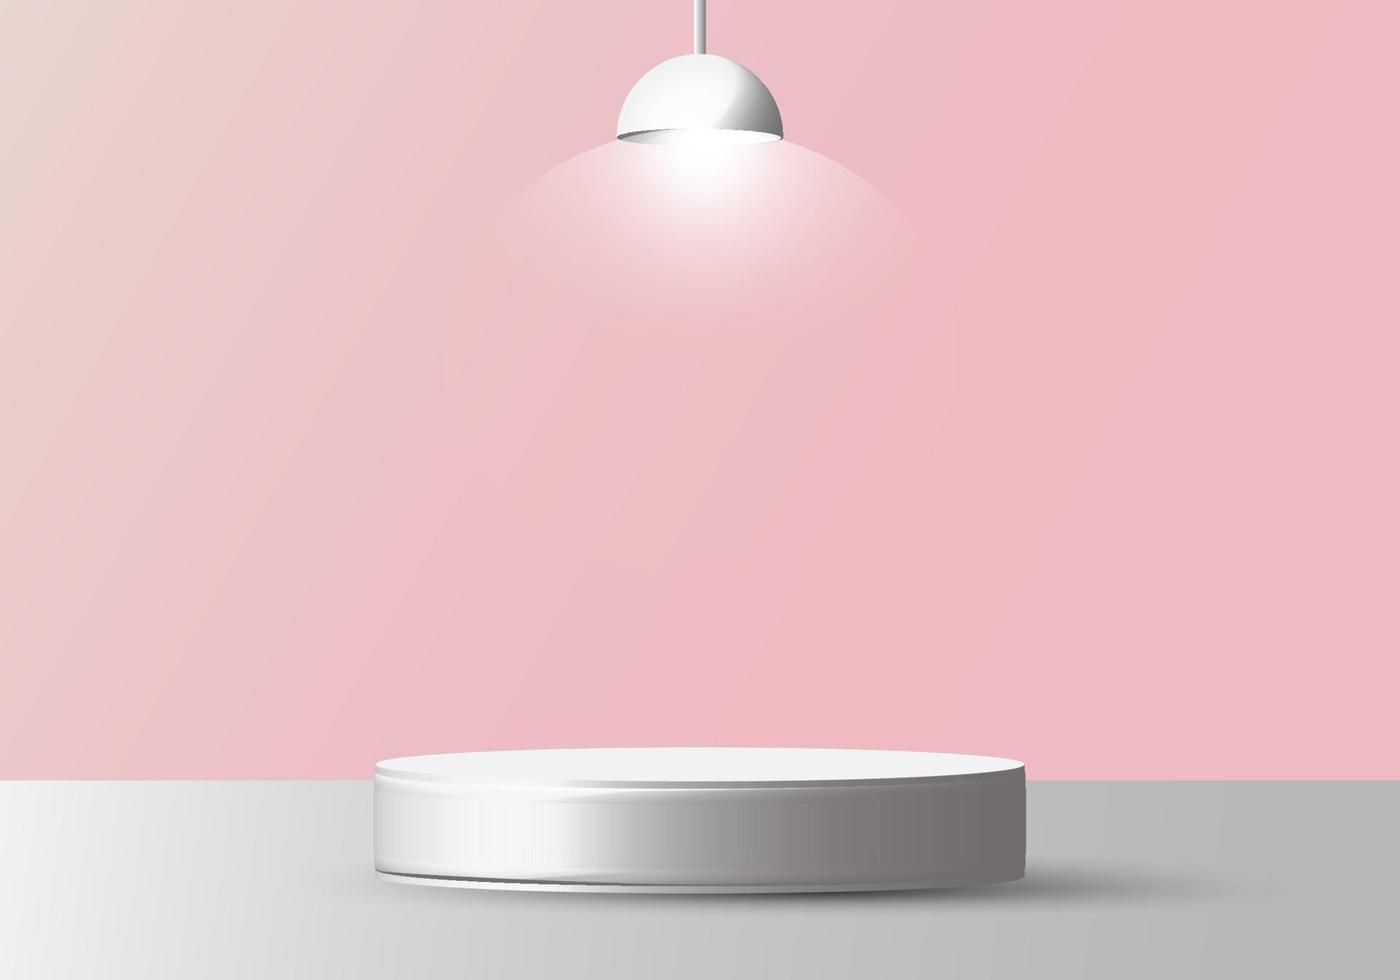 Maquete de pedestal redondo branco vazio realista 3D com lâmpada em fundo rosa suave vetor